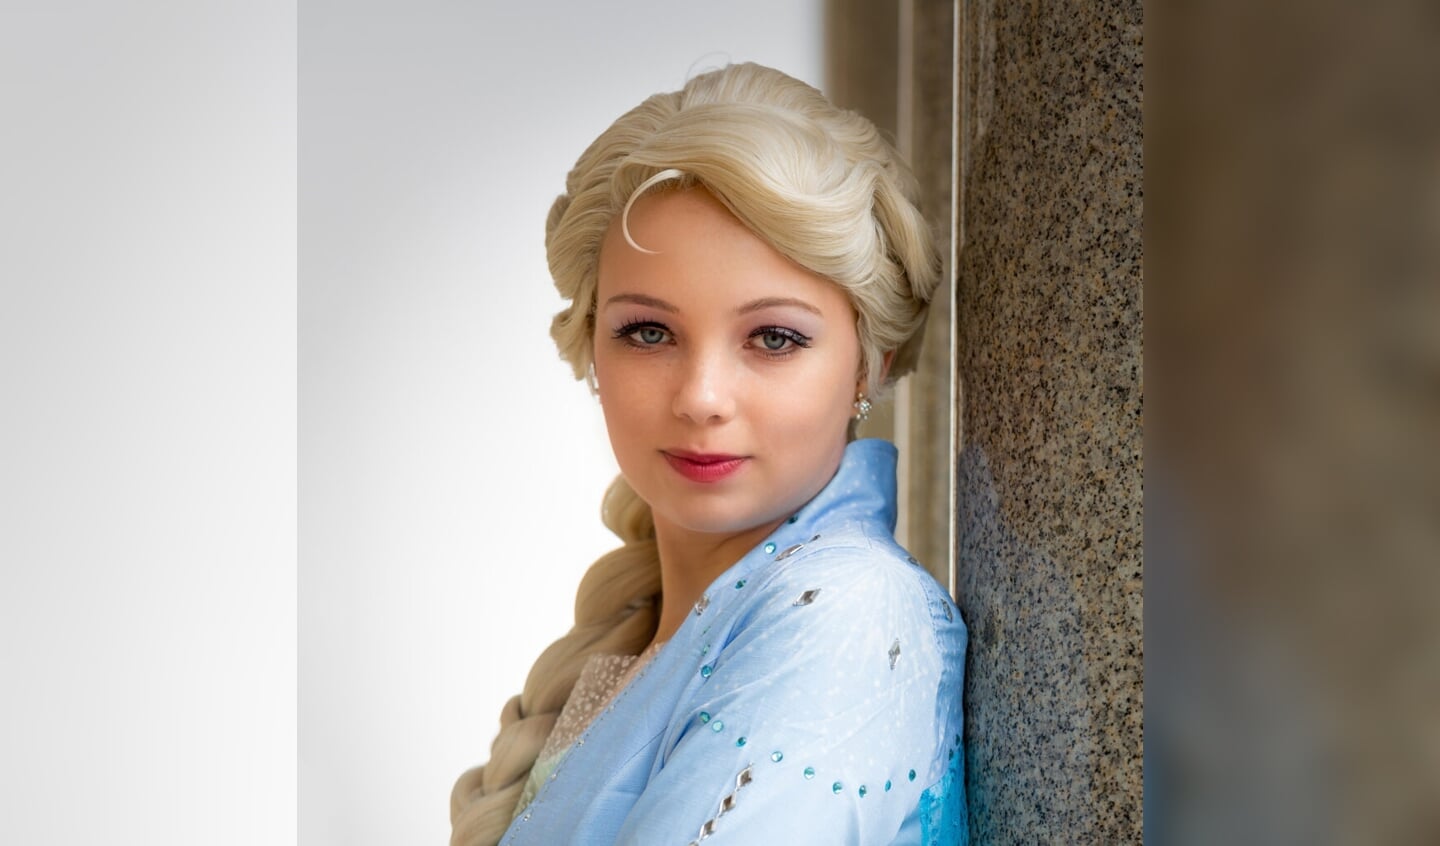 Frozen prinses Elsa is ook van de partij.